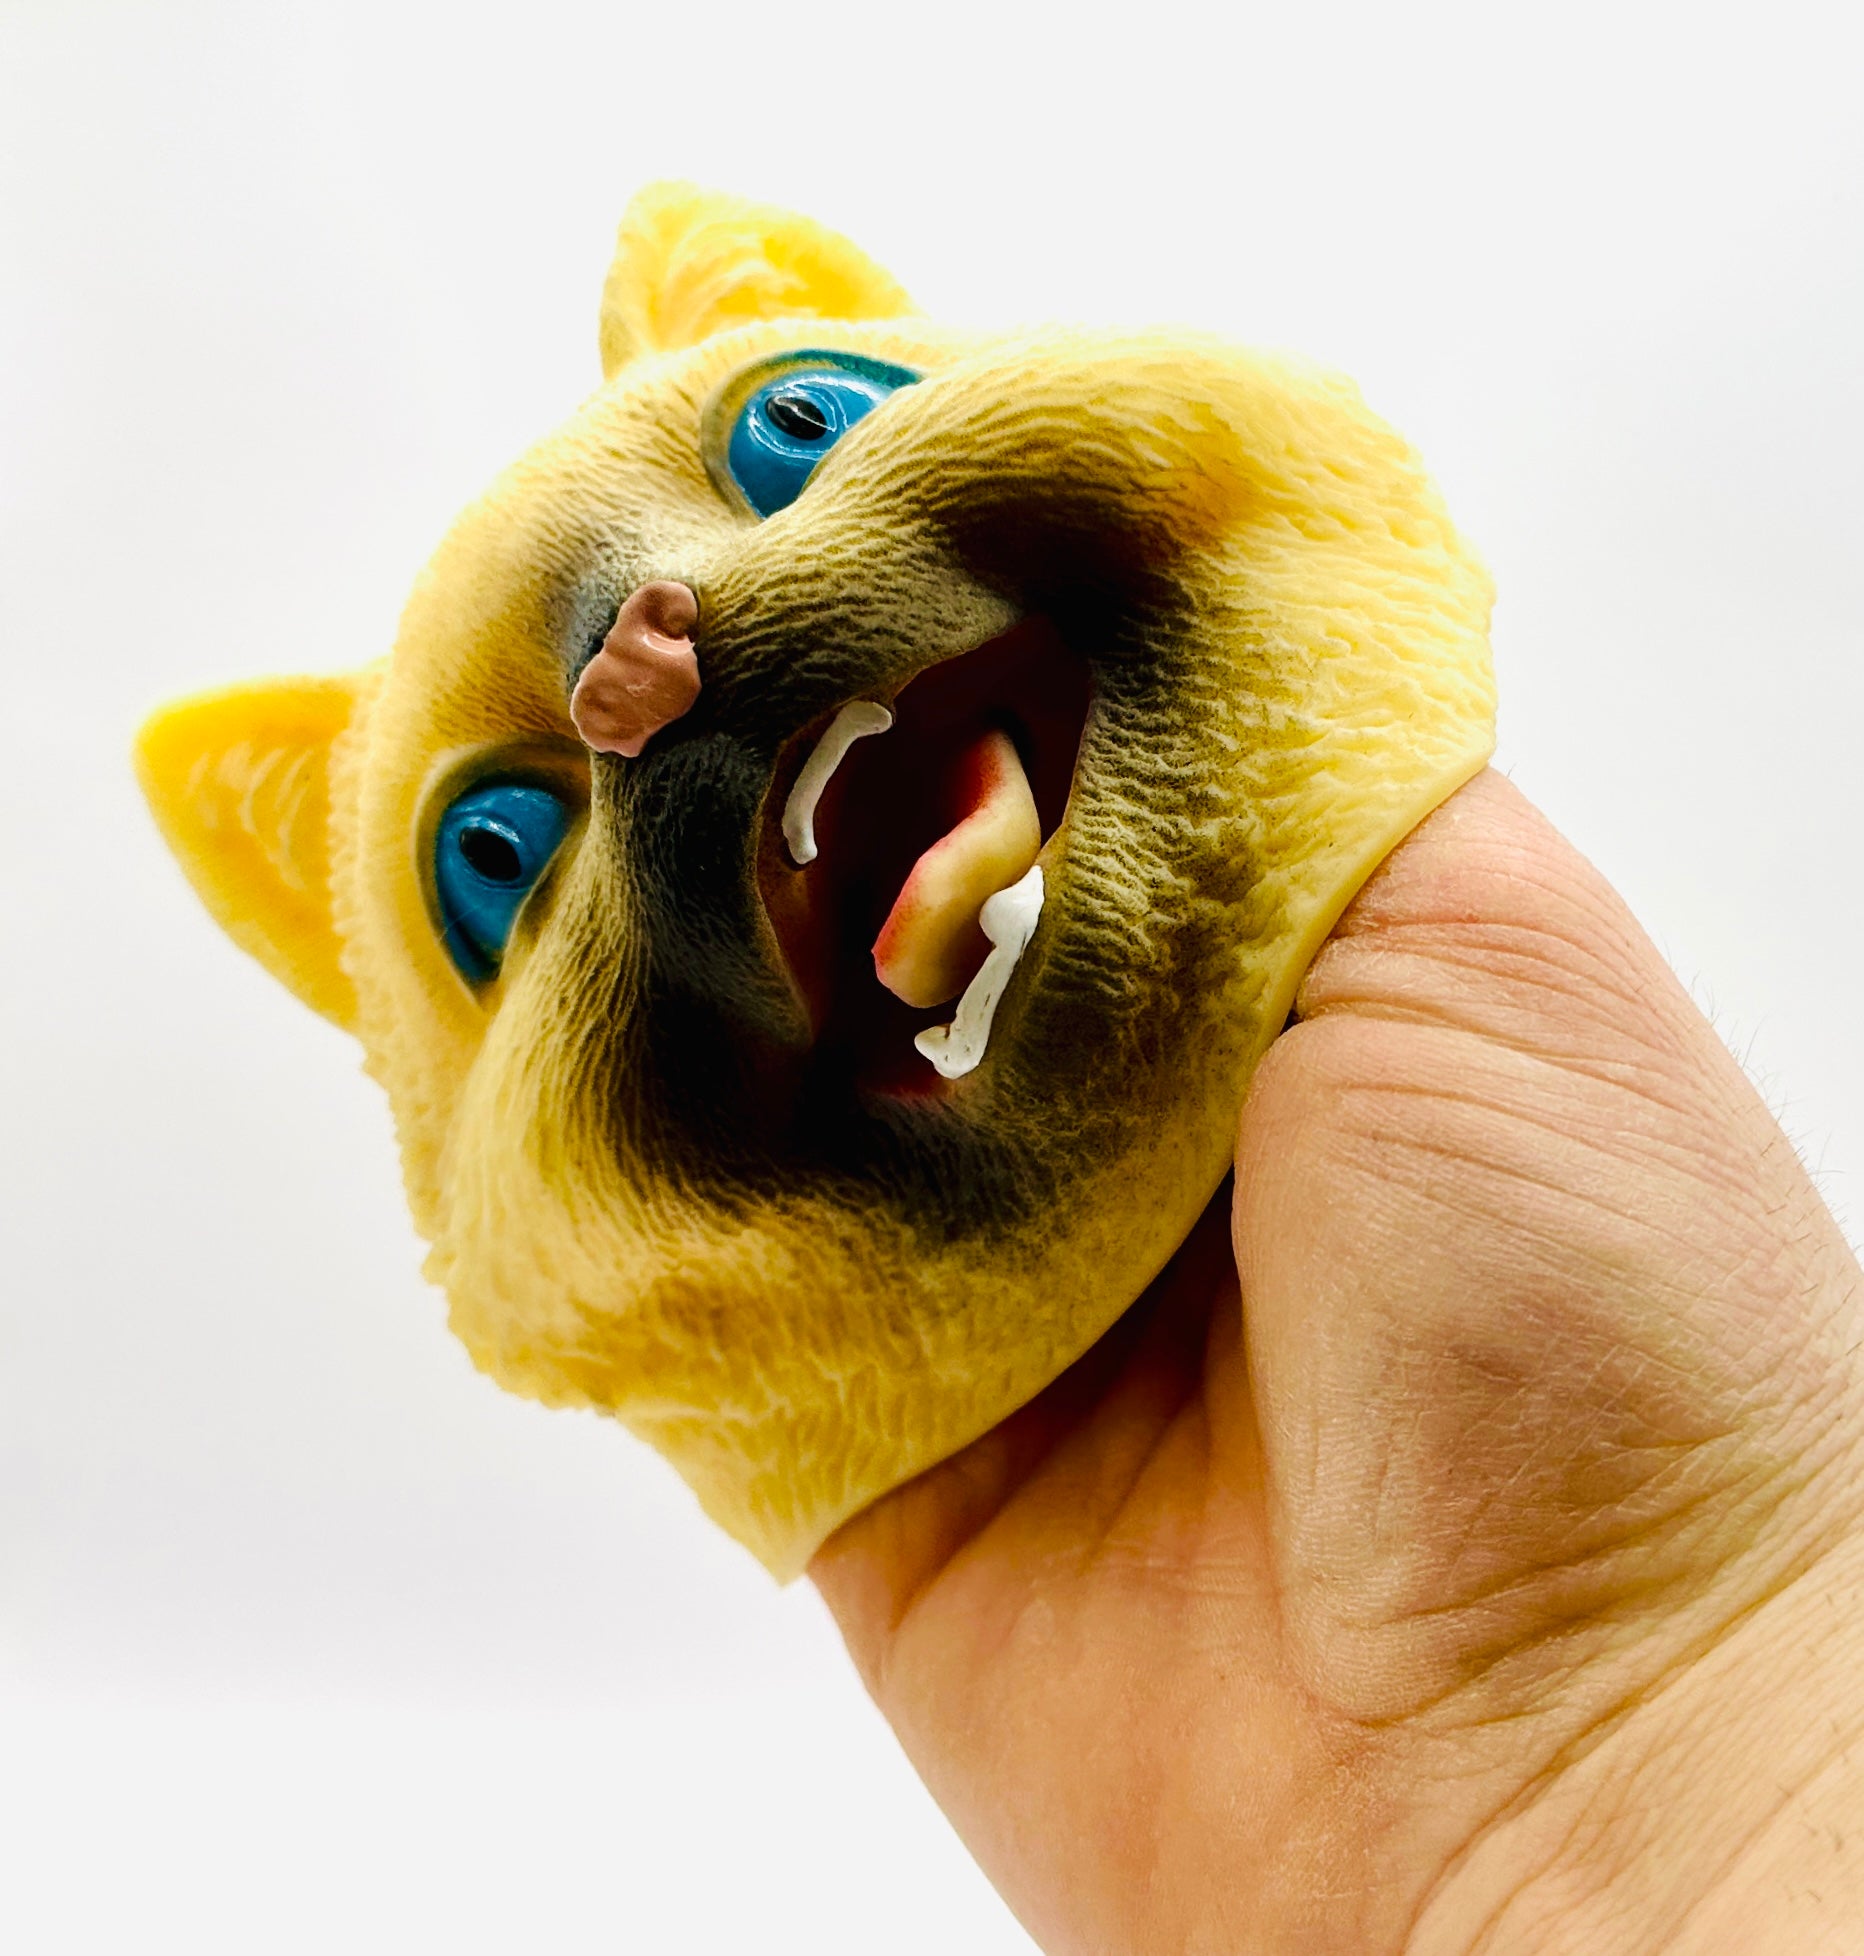 Cat Hand Puppet